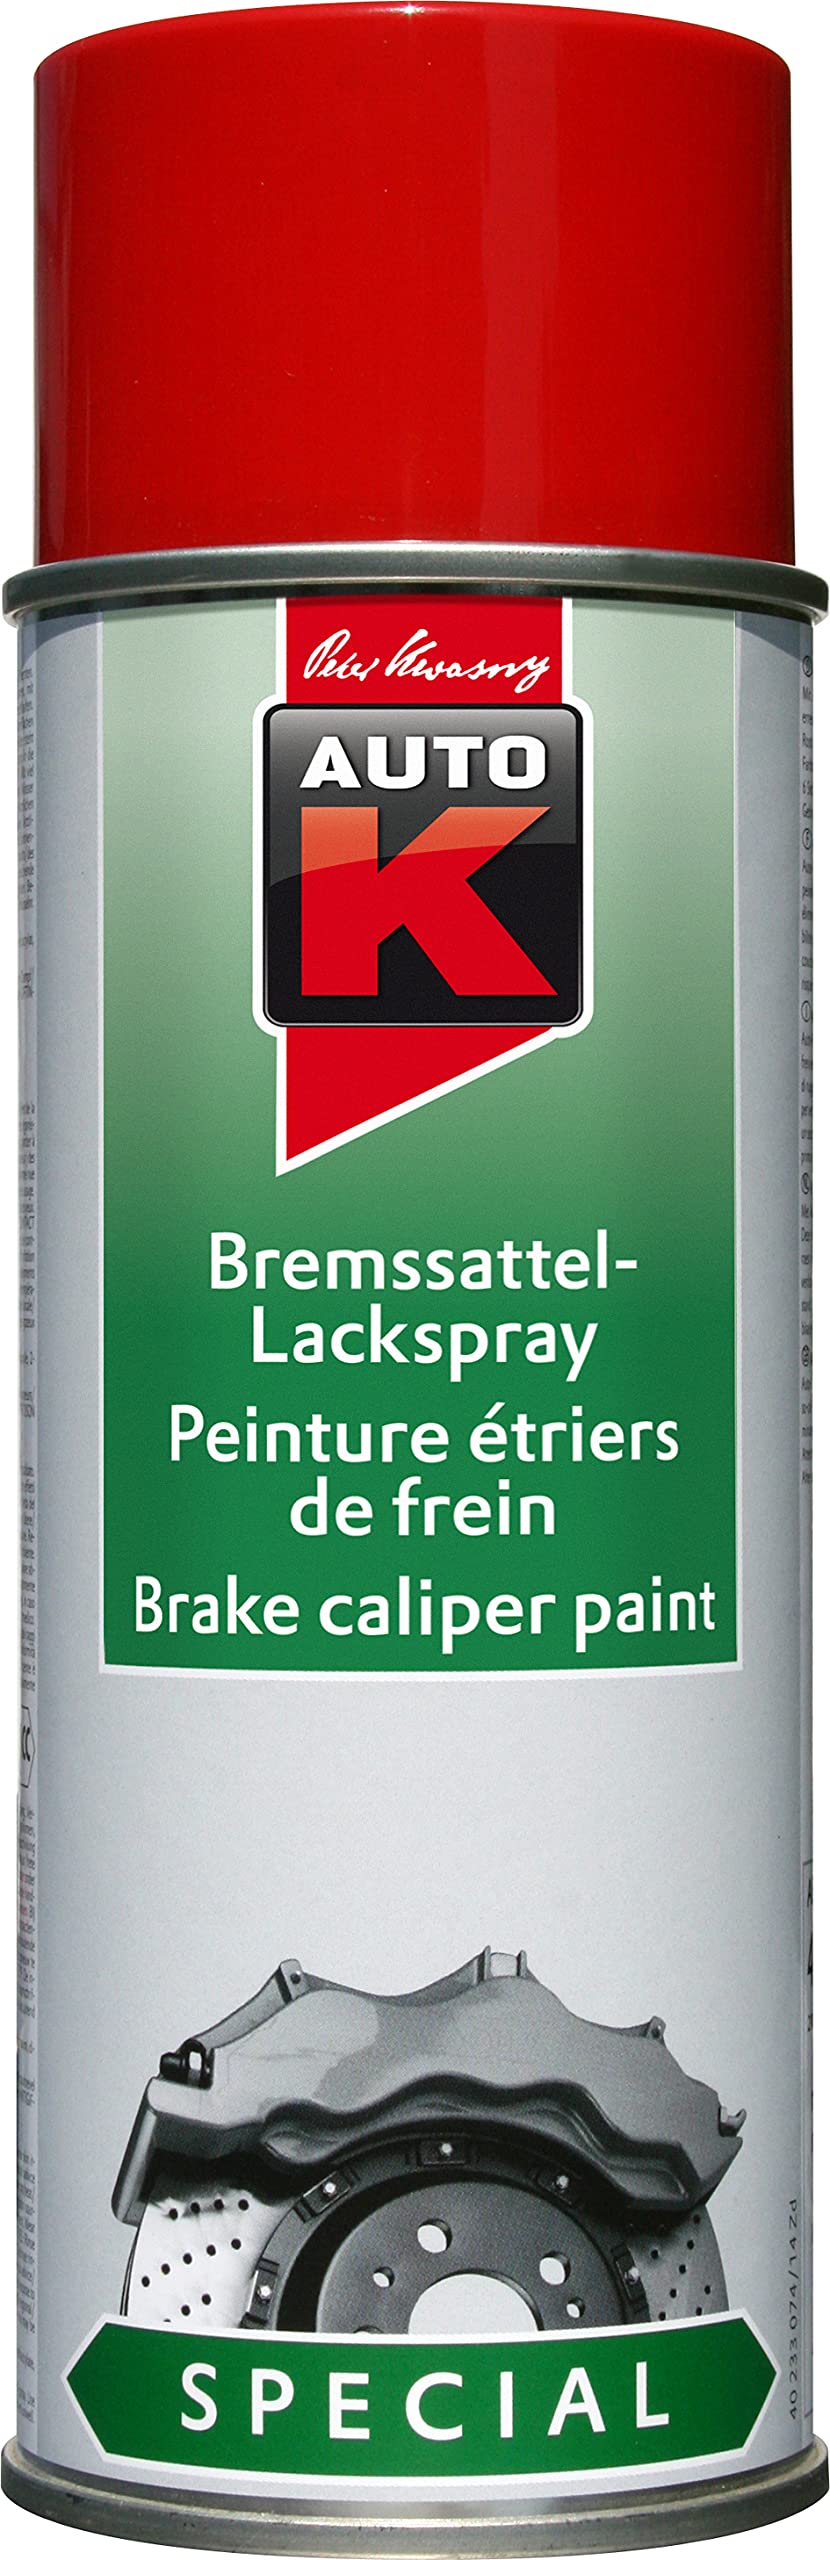 AutoK Special - Bremssattel Lackspray, 400ml, rot - Für farbliche Effekte im sichtbaren Bremsenbereich von Auto K